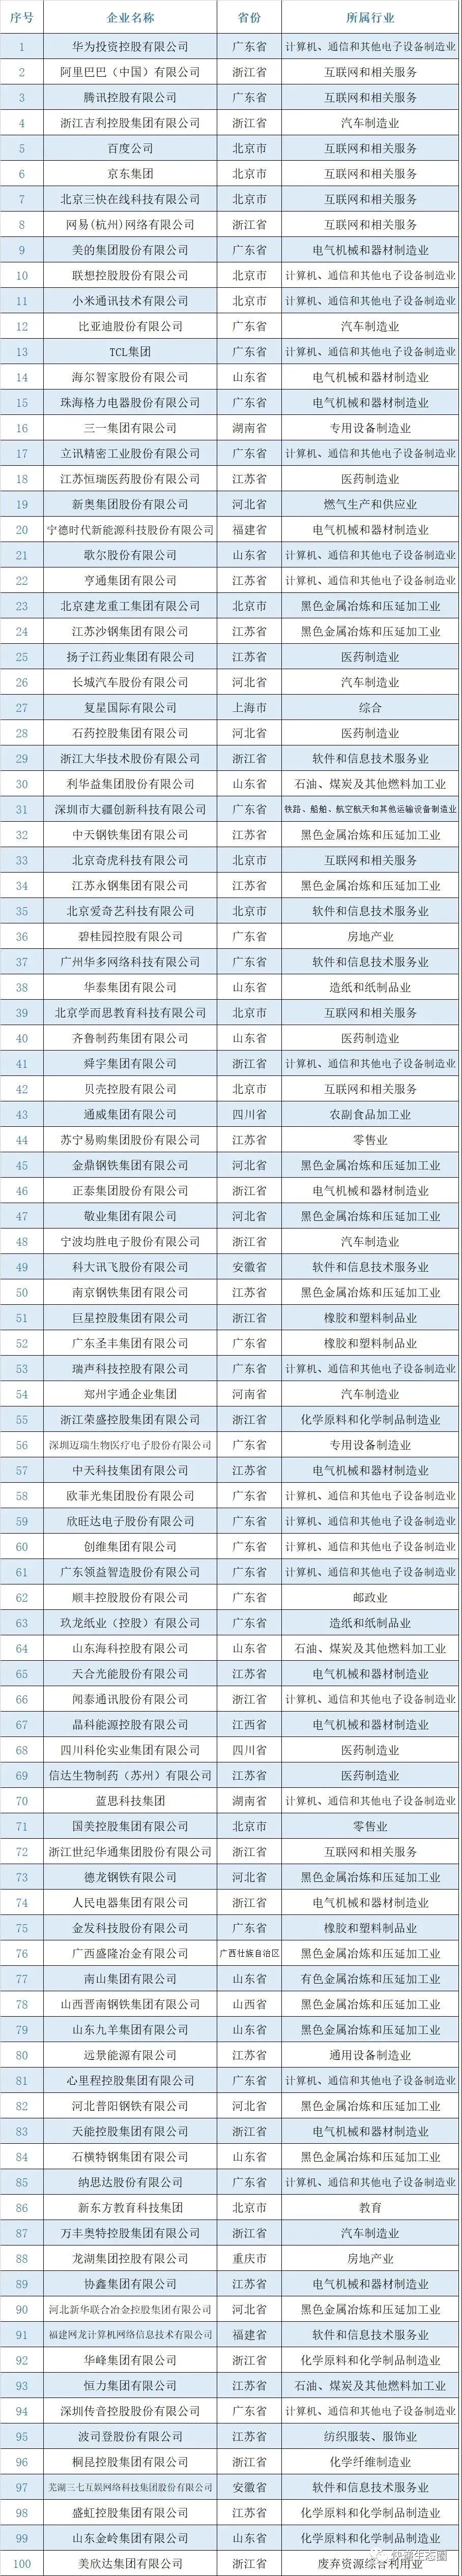 中国企业研发投入排行_中国民营企业研发投入500家榜单:顺丰和中通上榜